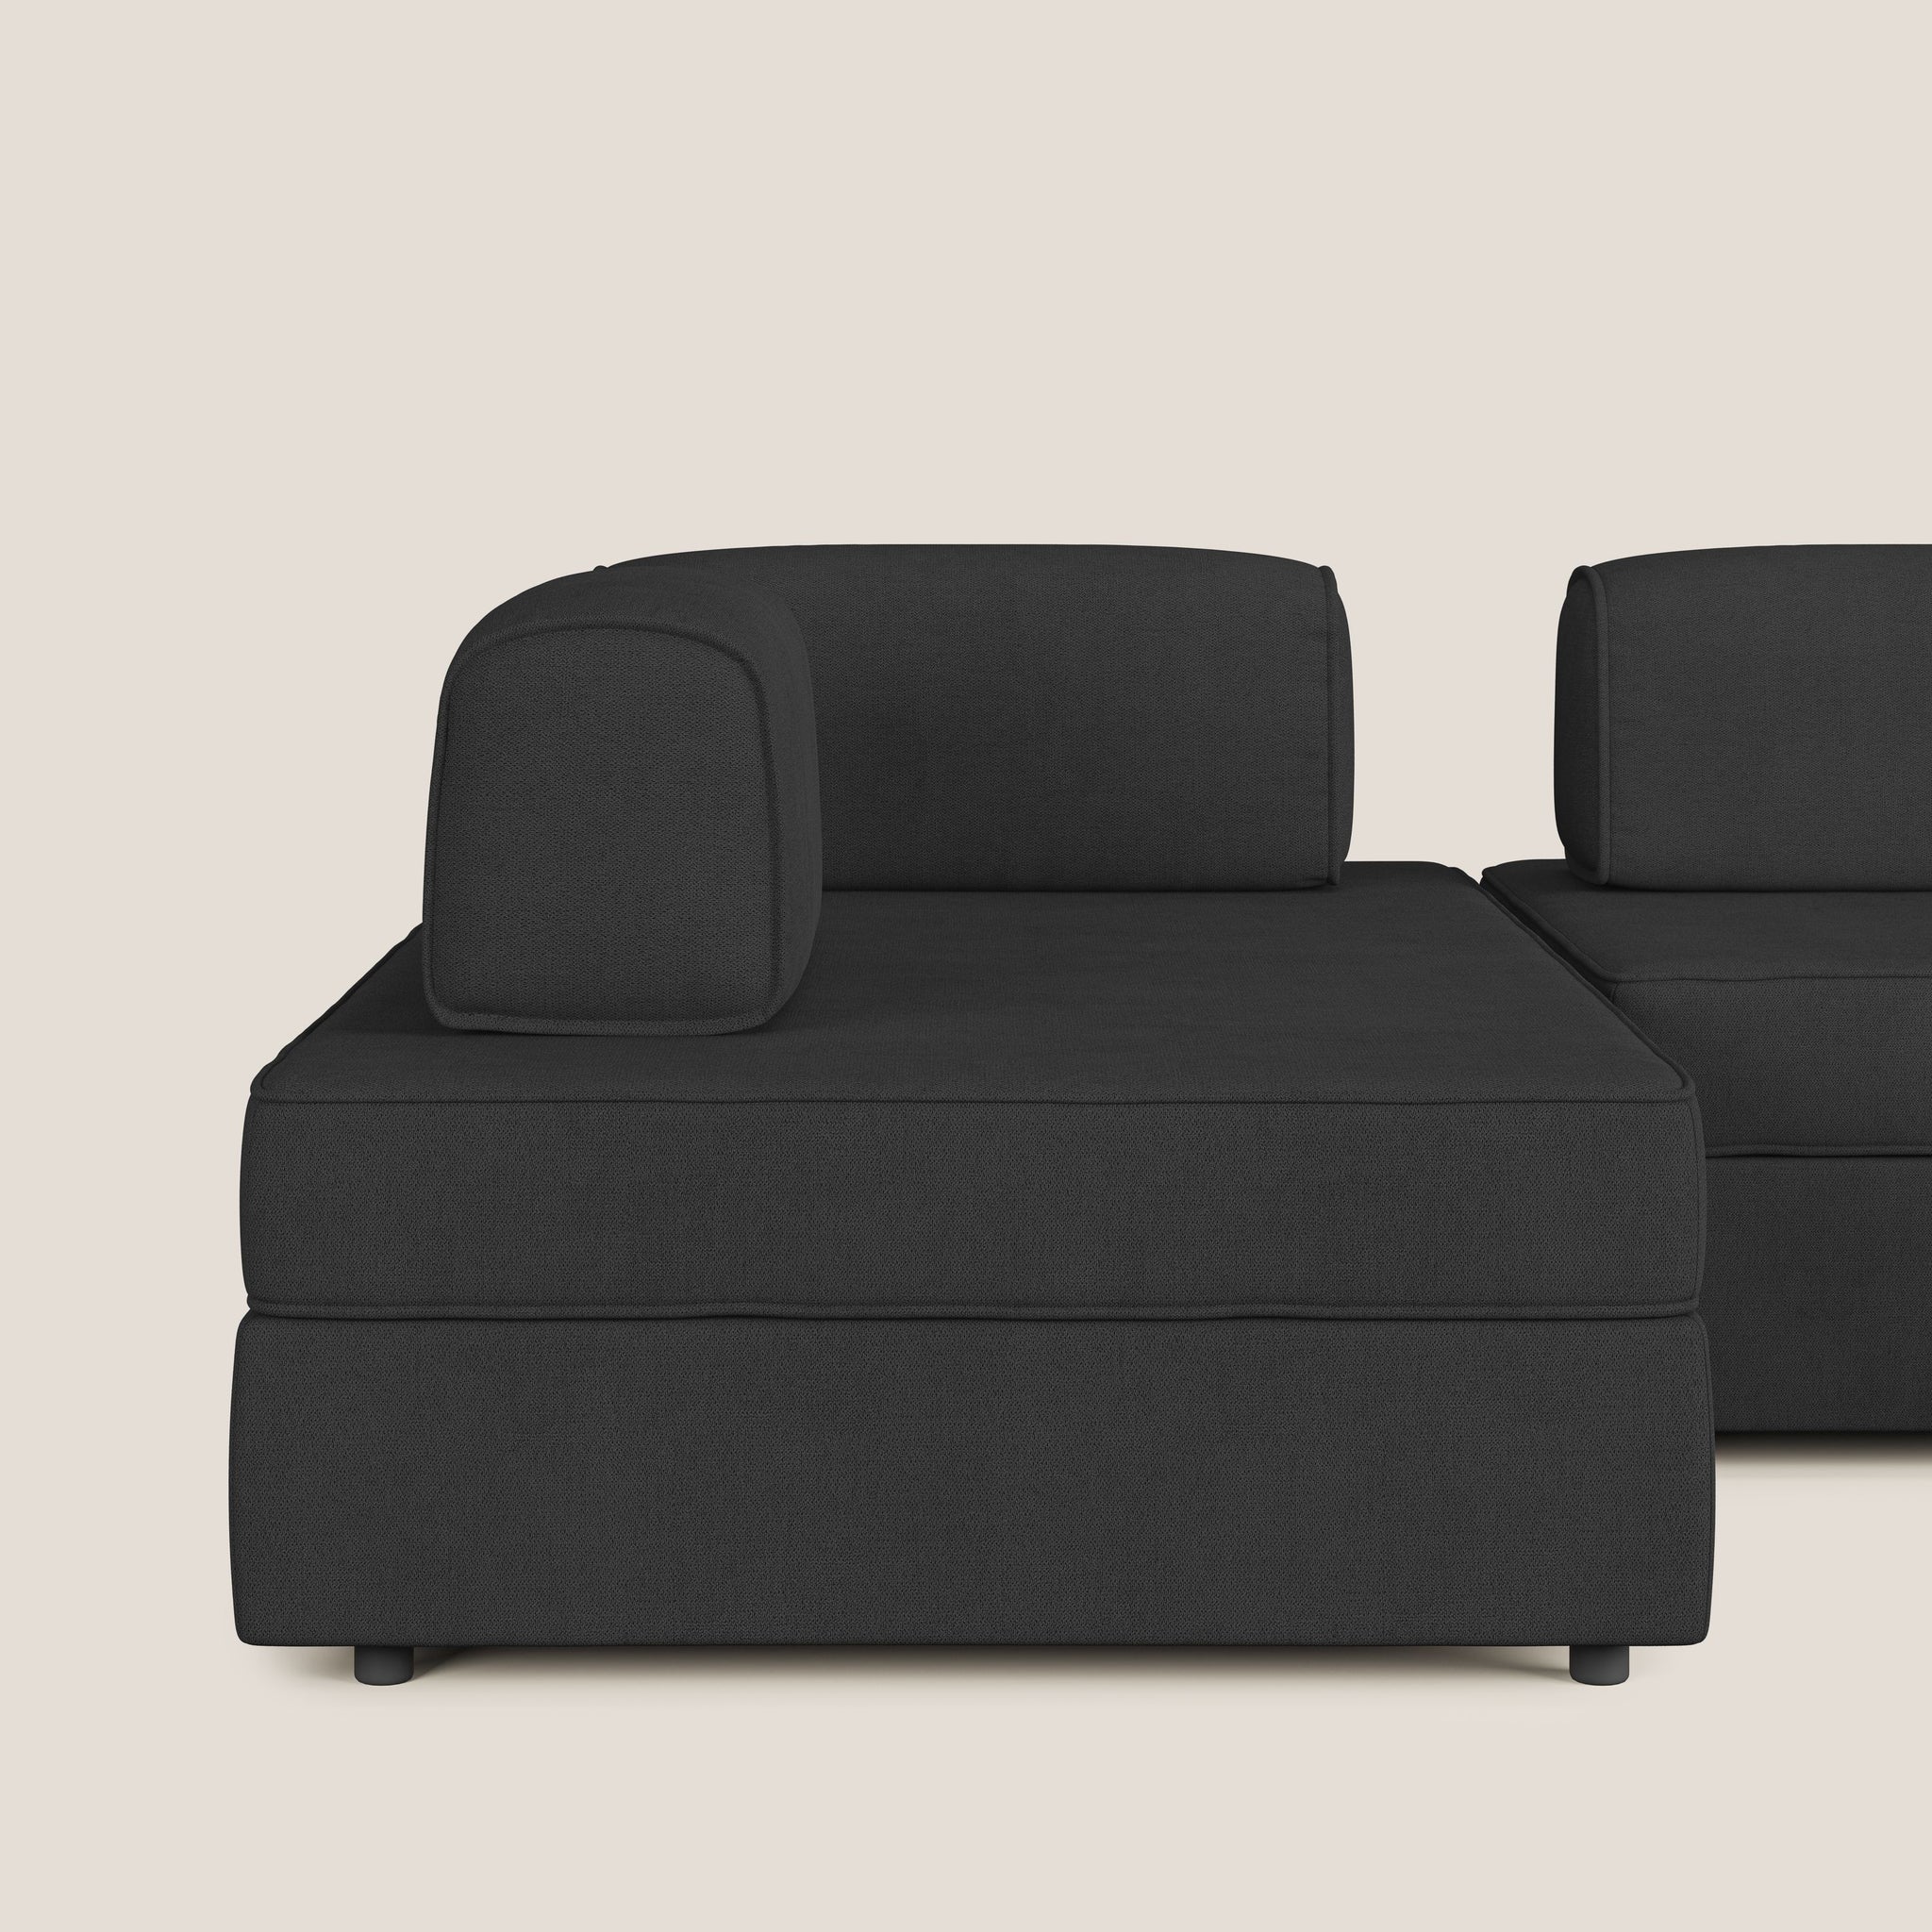 Liberty divano panoramico con pouf estraibile e schienali movibili in tessuto morbido impermeabile T02